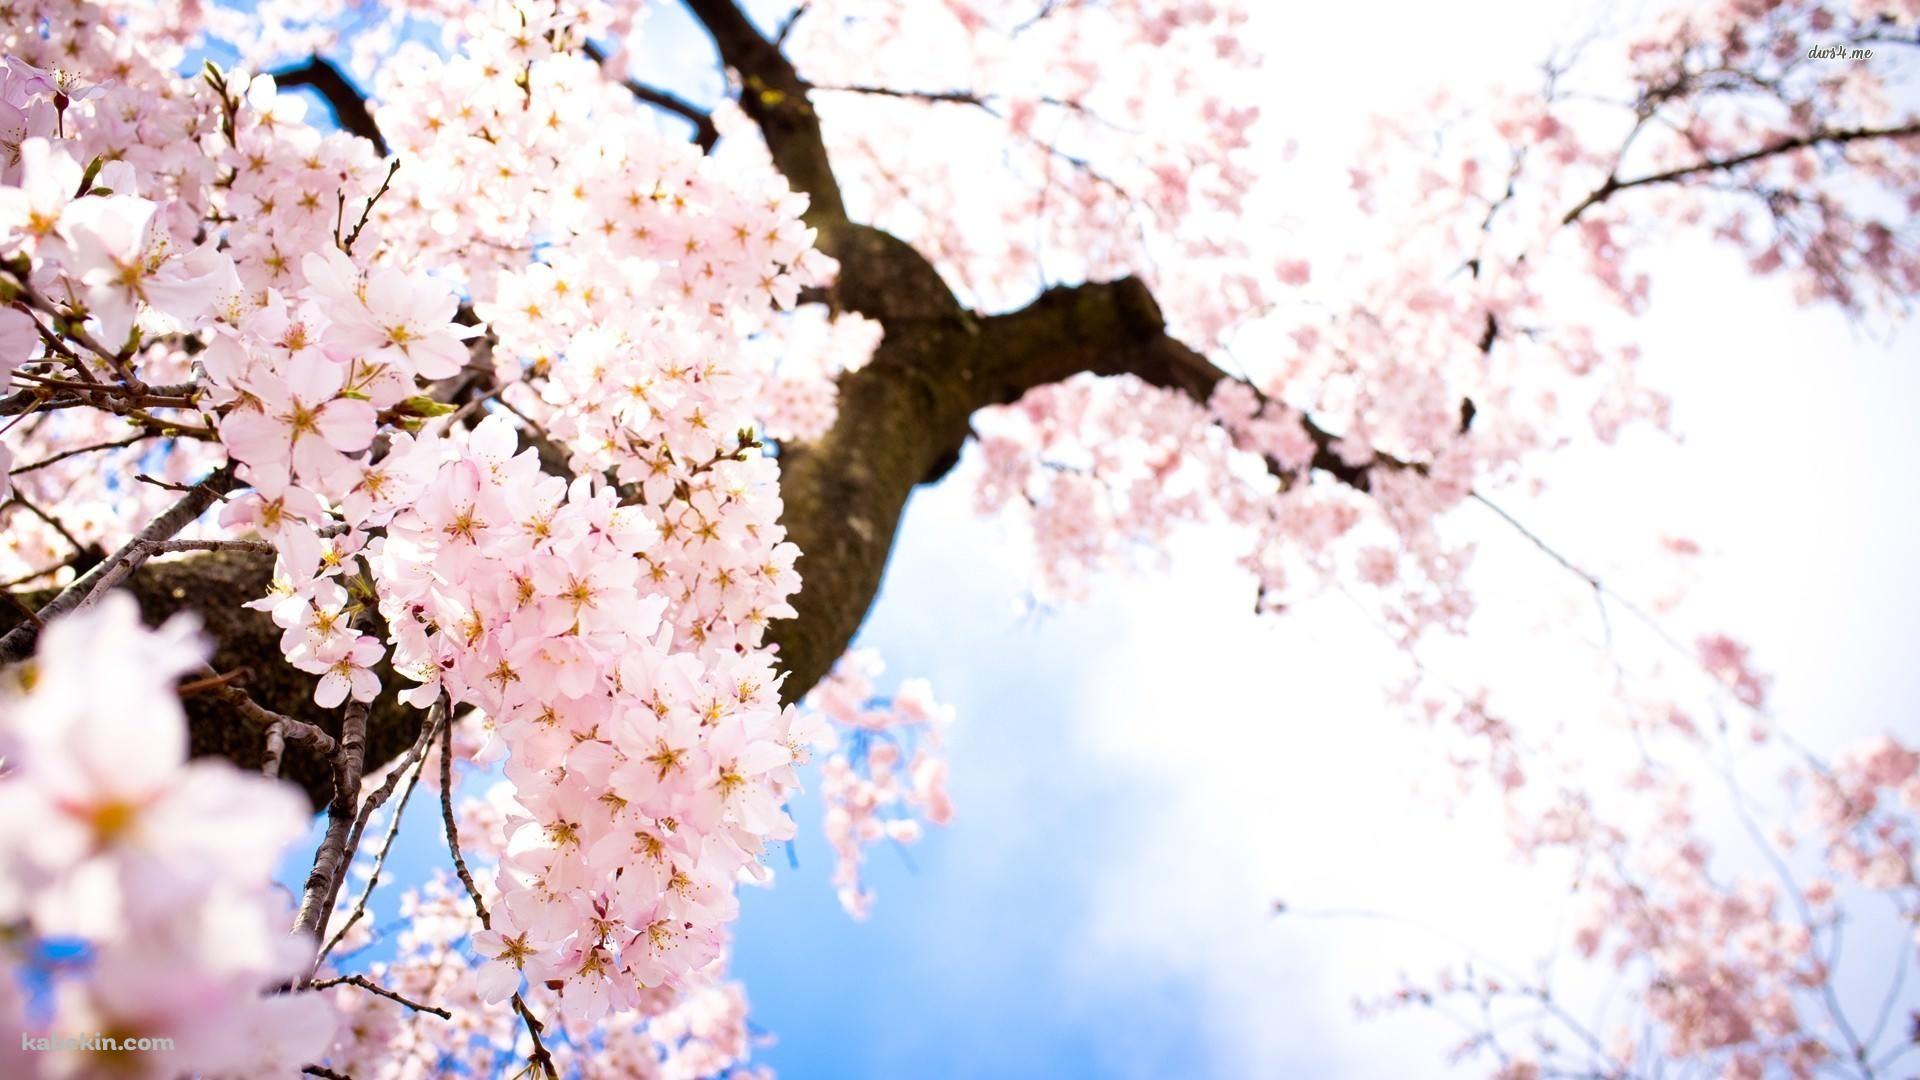 下から見あげた桜の花の壁紙(1920px x 1080px) 高画質 PC・デスクトップ用